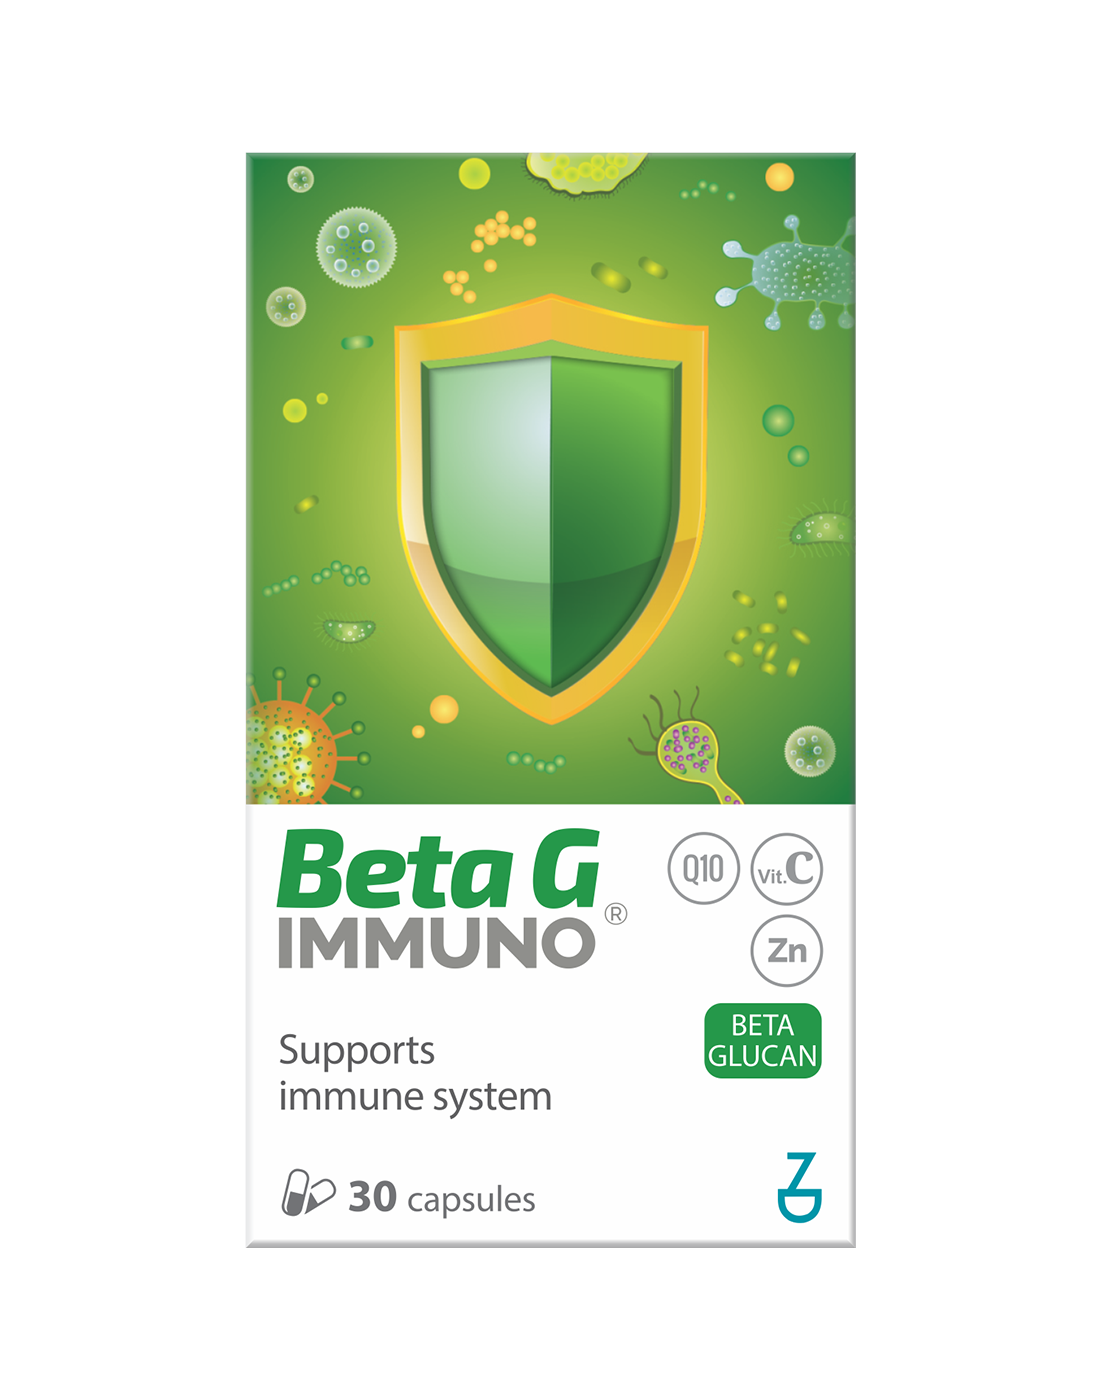 BETA G immuno